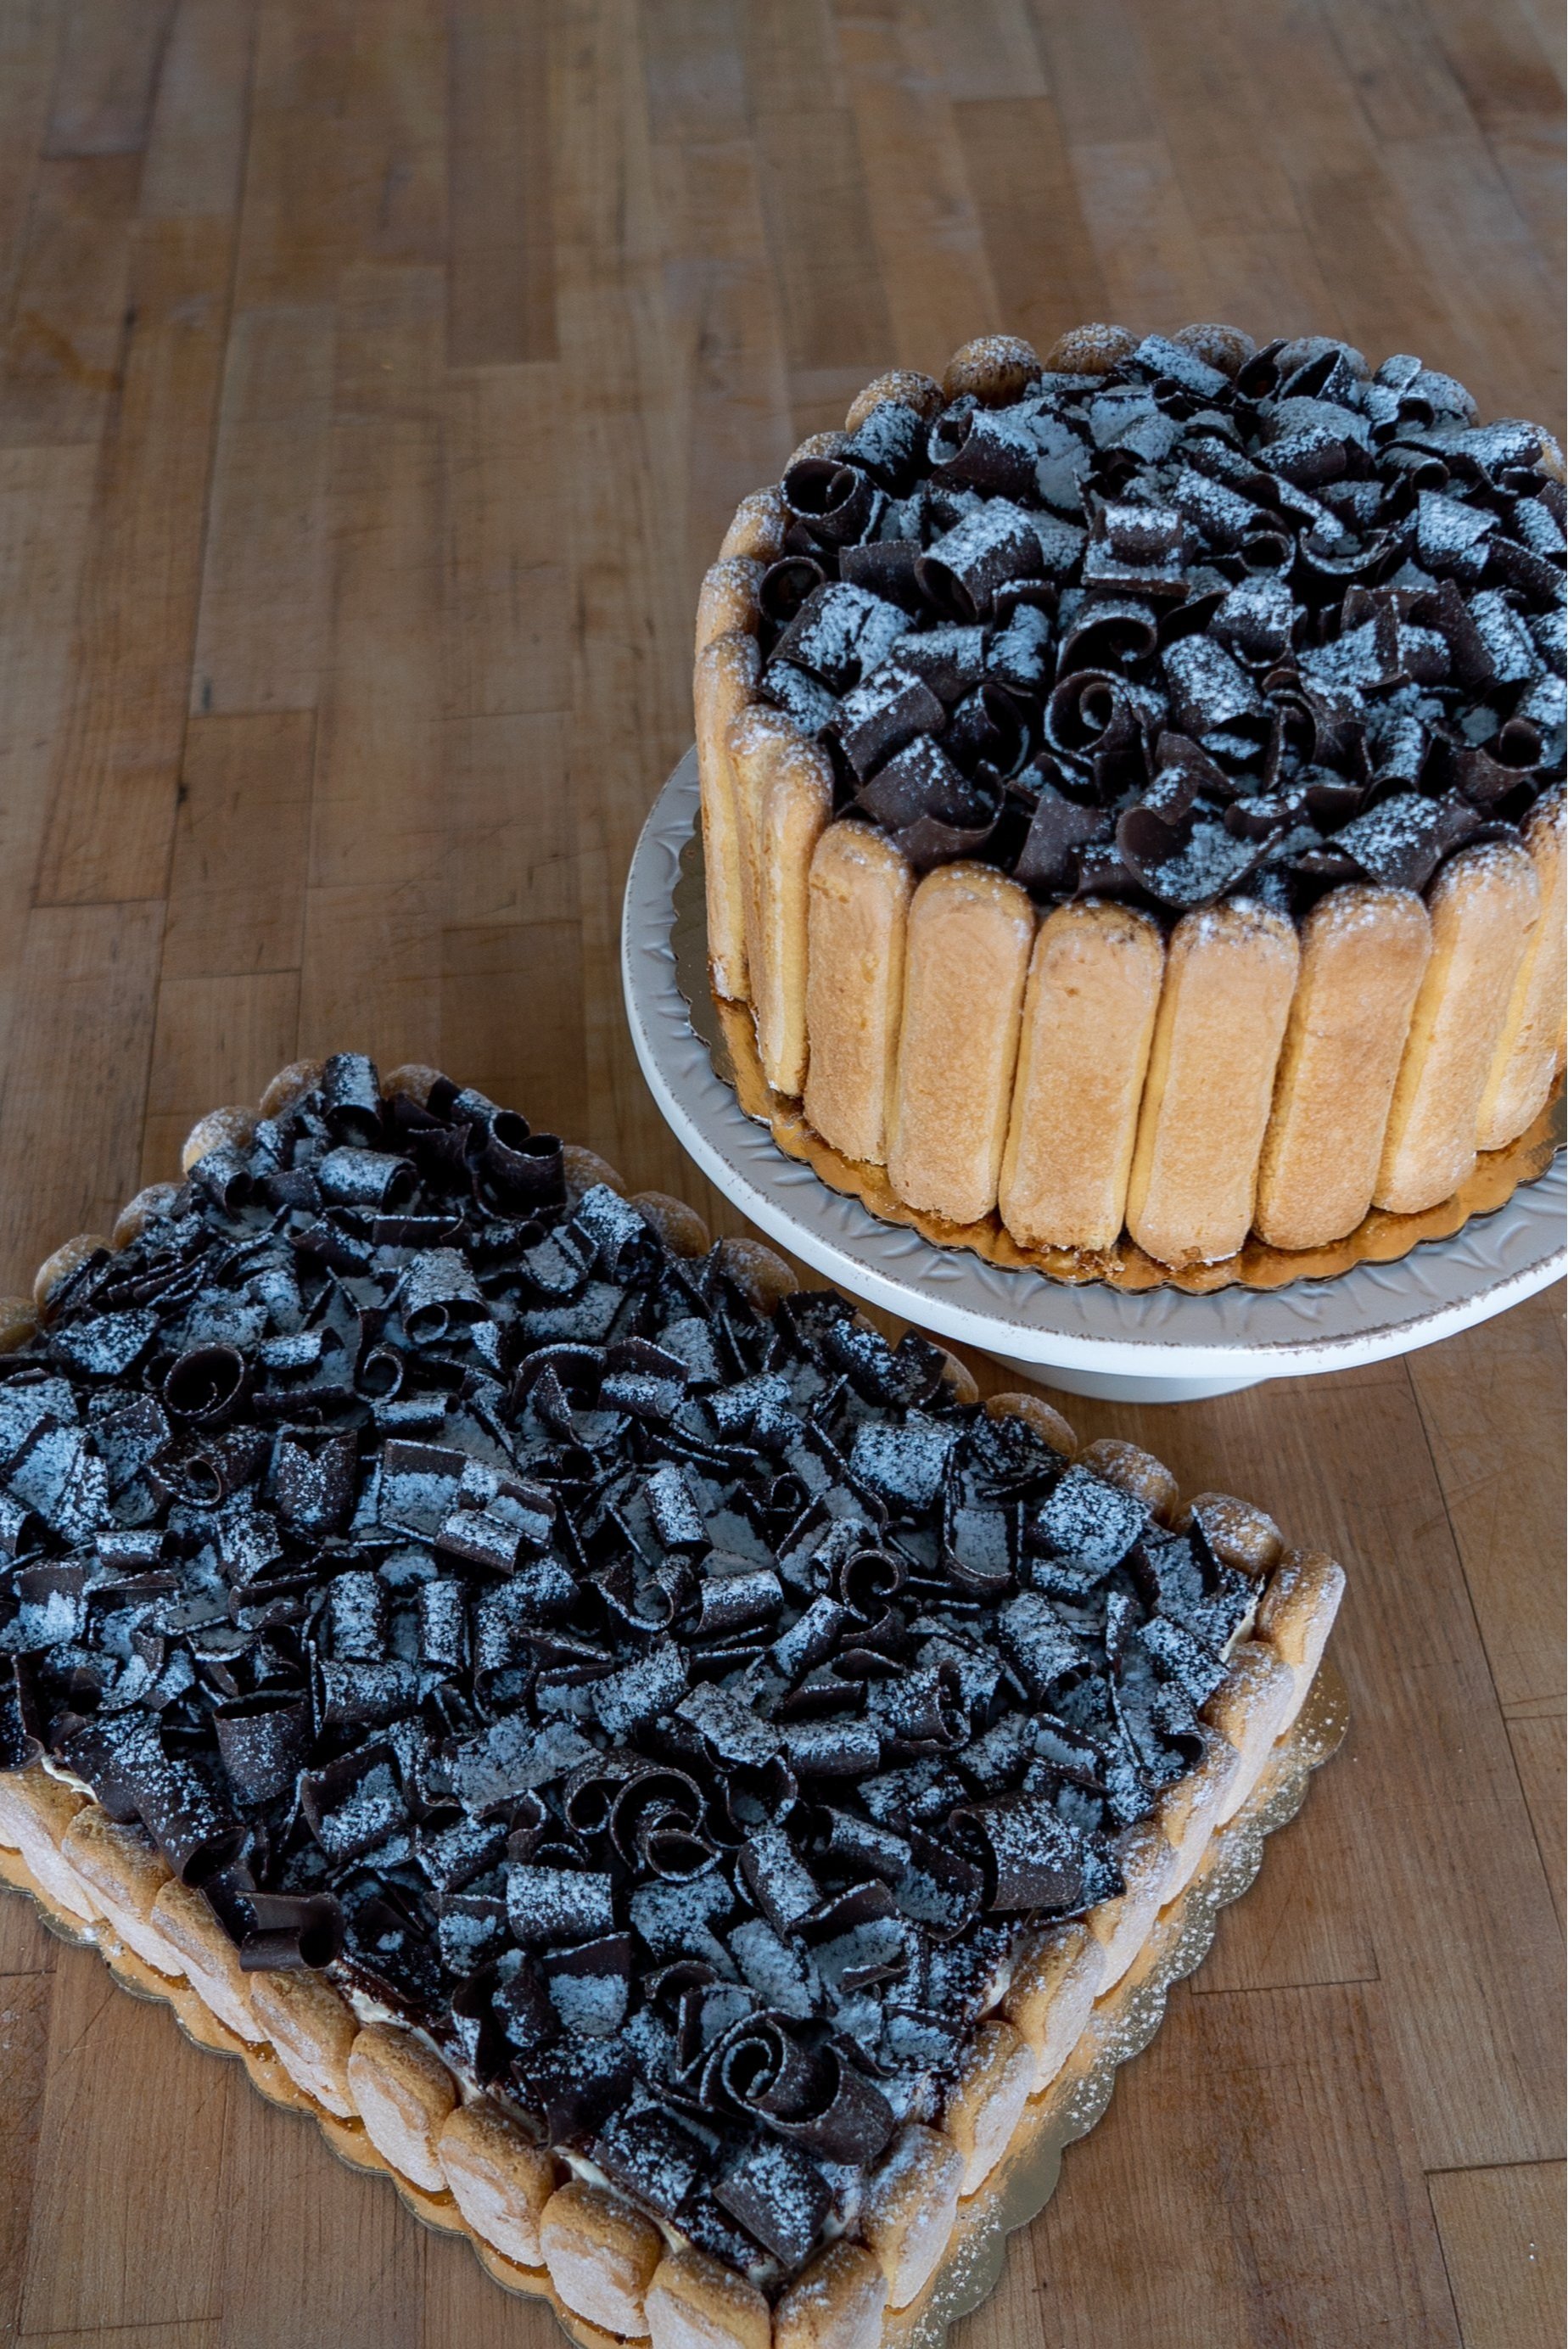 Layer Cake Gourmand & Fruité - Une Pluie de Gourmandises